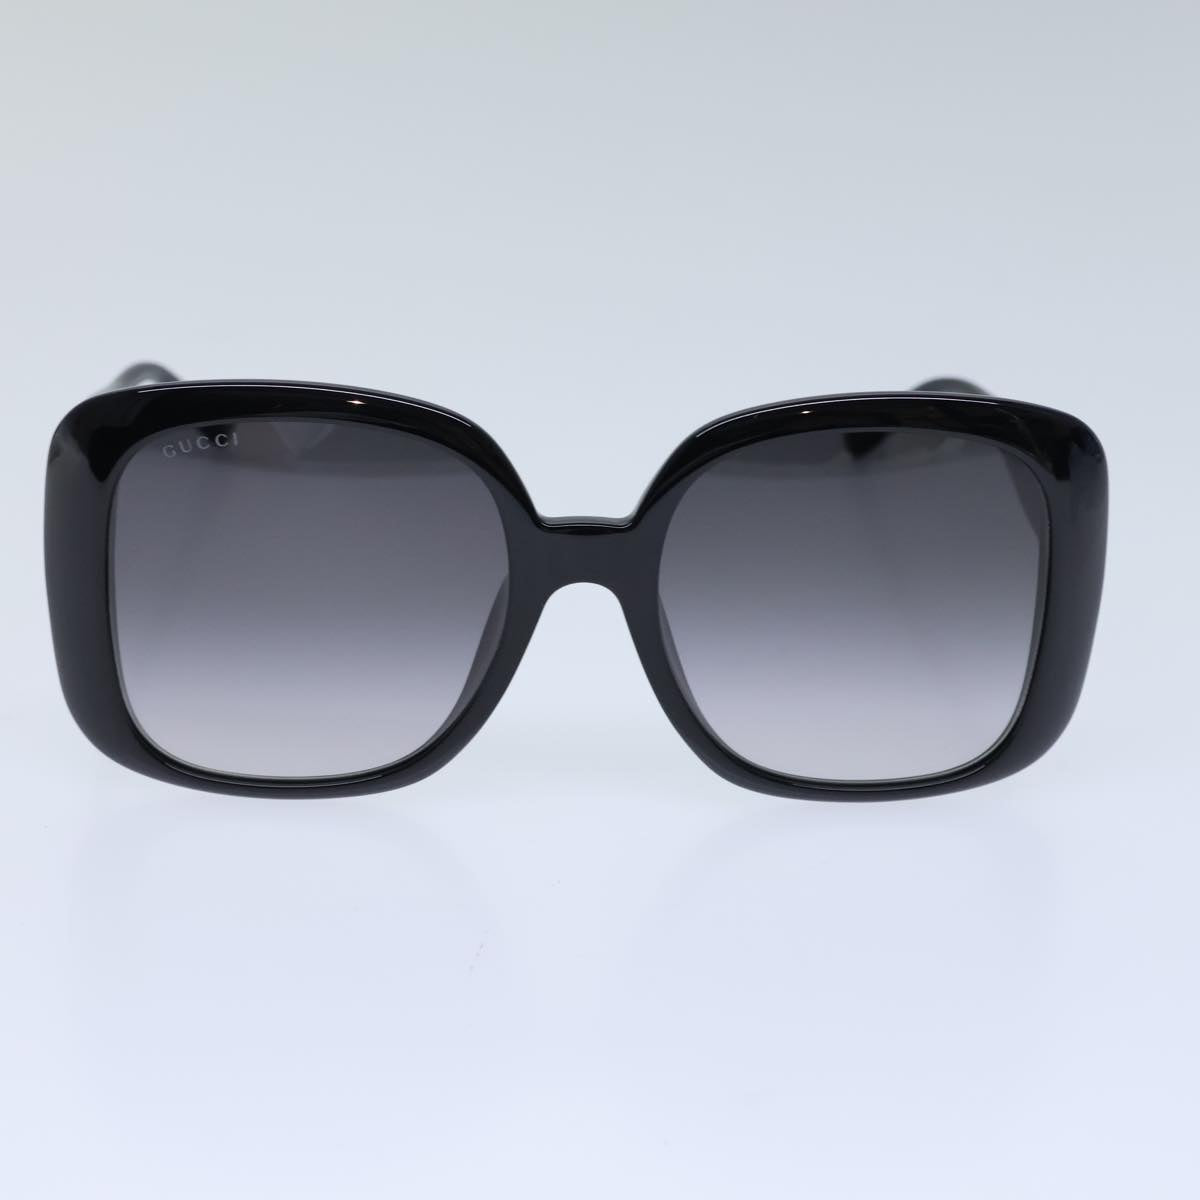 GUCCI Sunglasses plastic Black Auth 72911 - 0